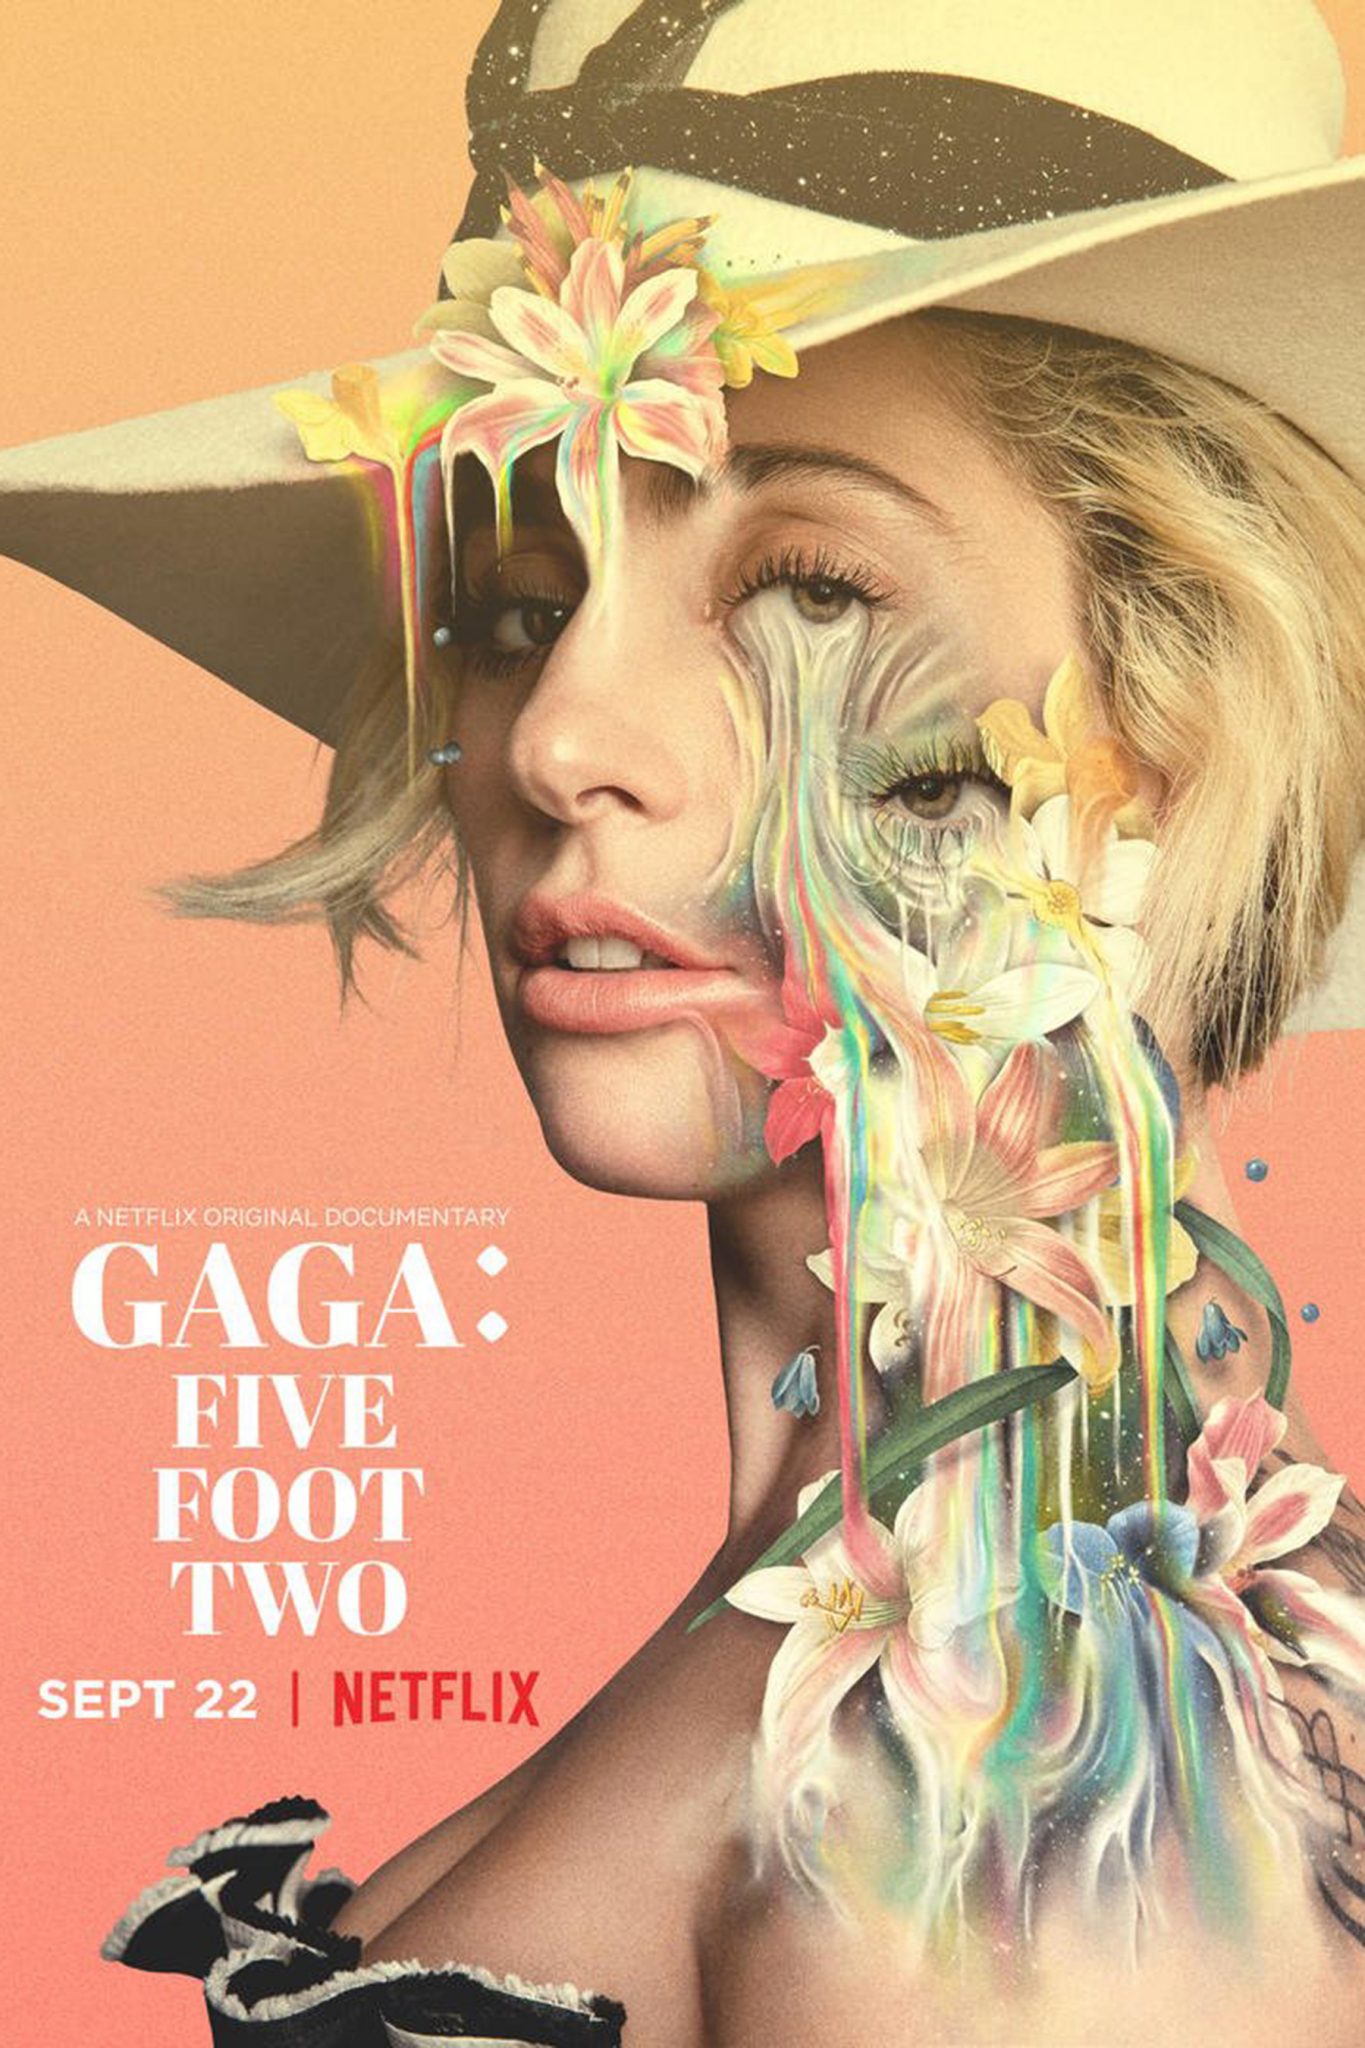 Netflix Libera Trailer do Documentário Sobre a Diva do Pop Lady Gaga 1